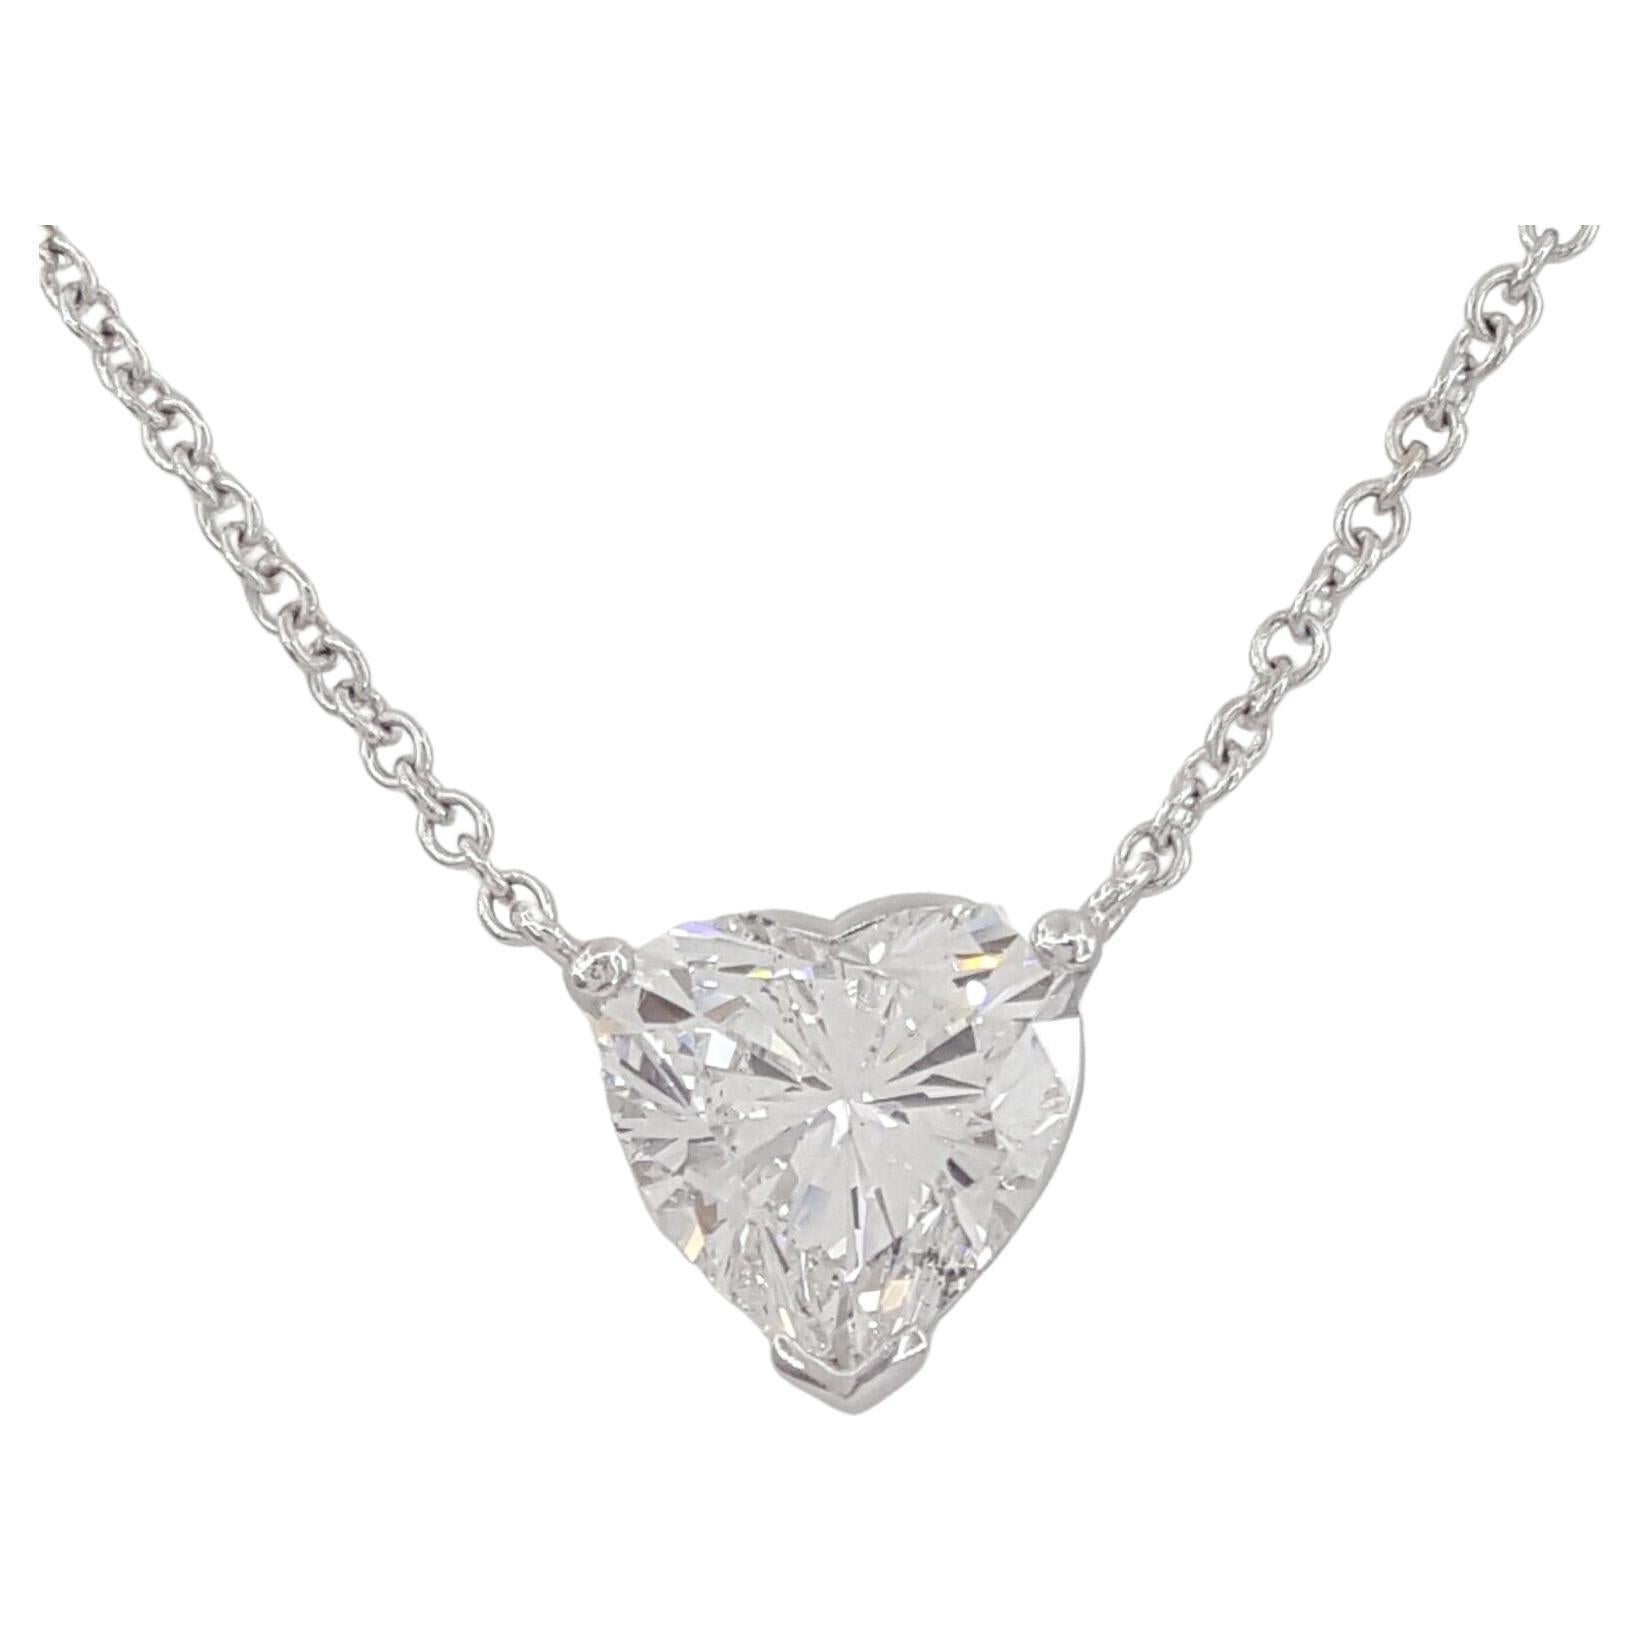 GIA Certified 3.12 Carat Heart Cut Diamond Pendant Necklace